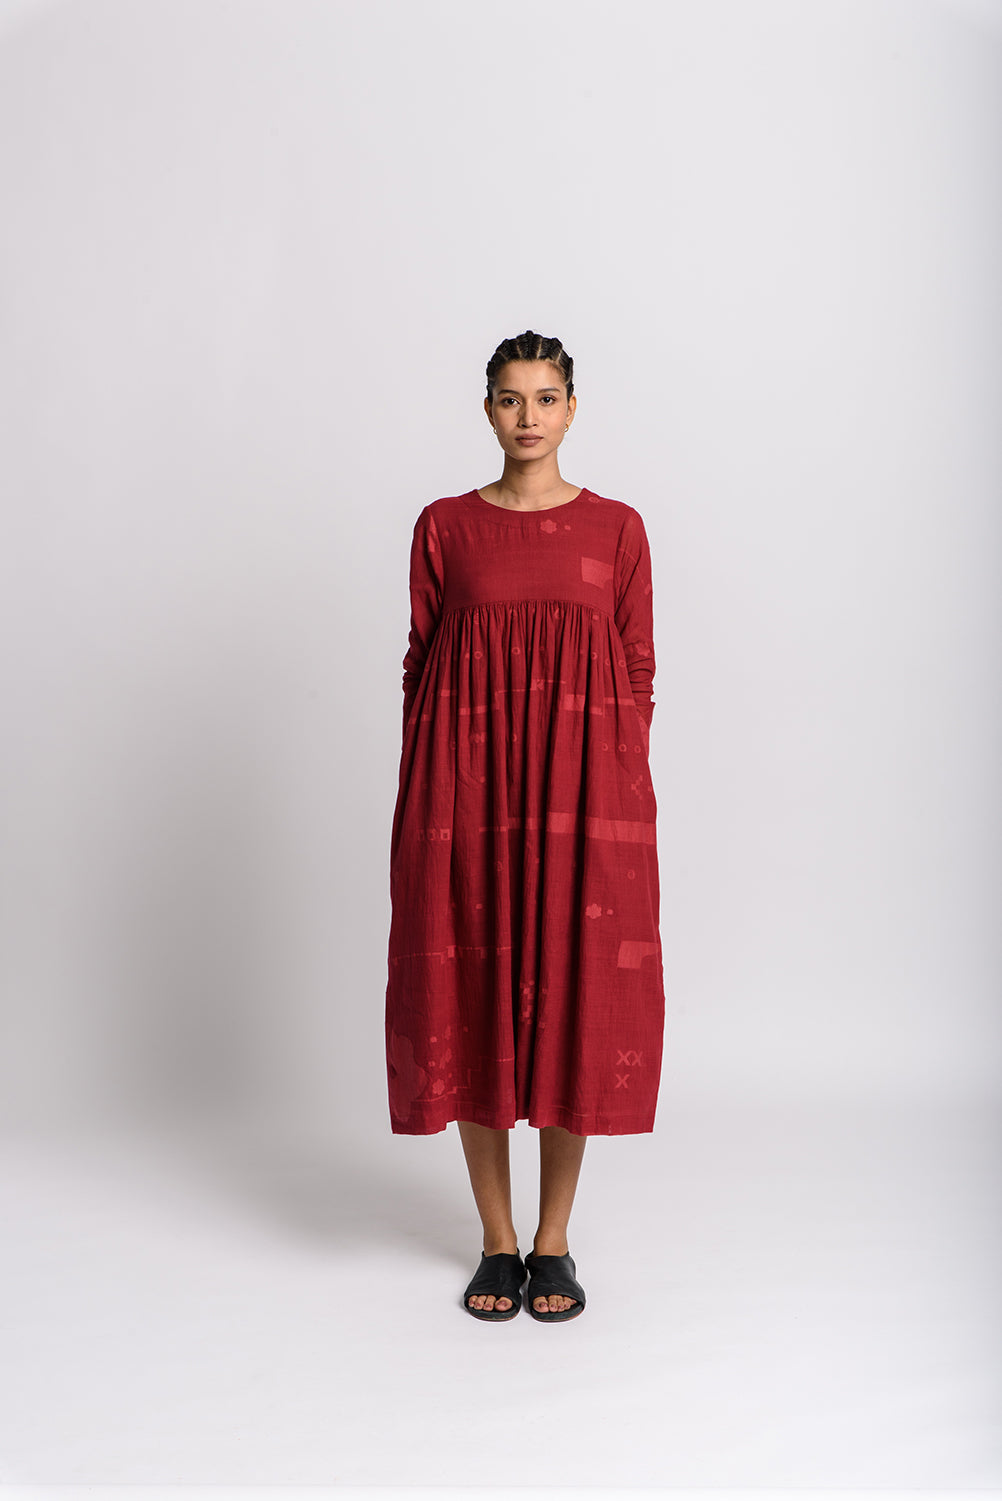 素朴な赤の現代的なドレス